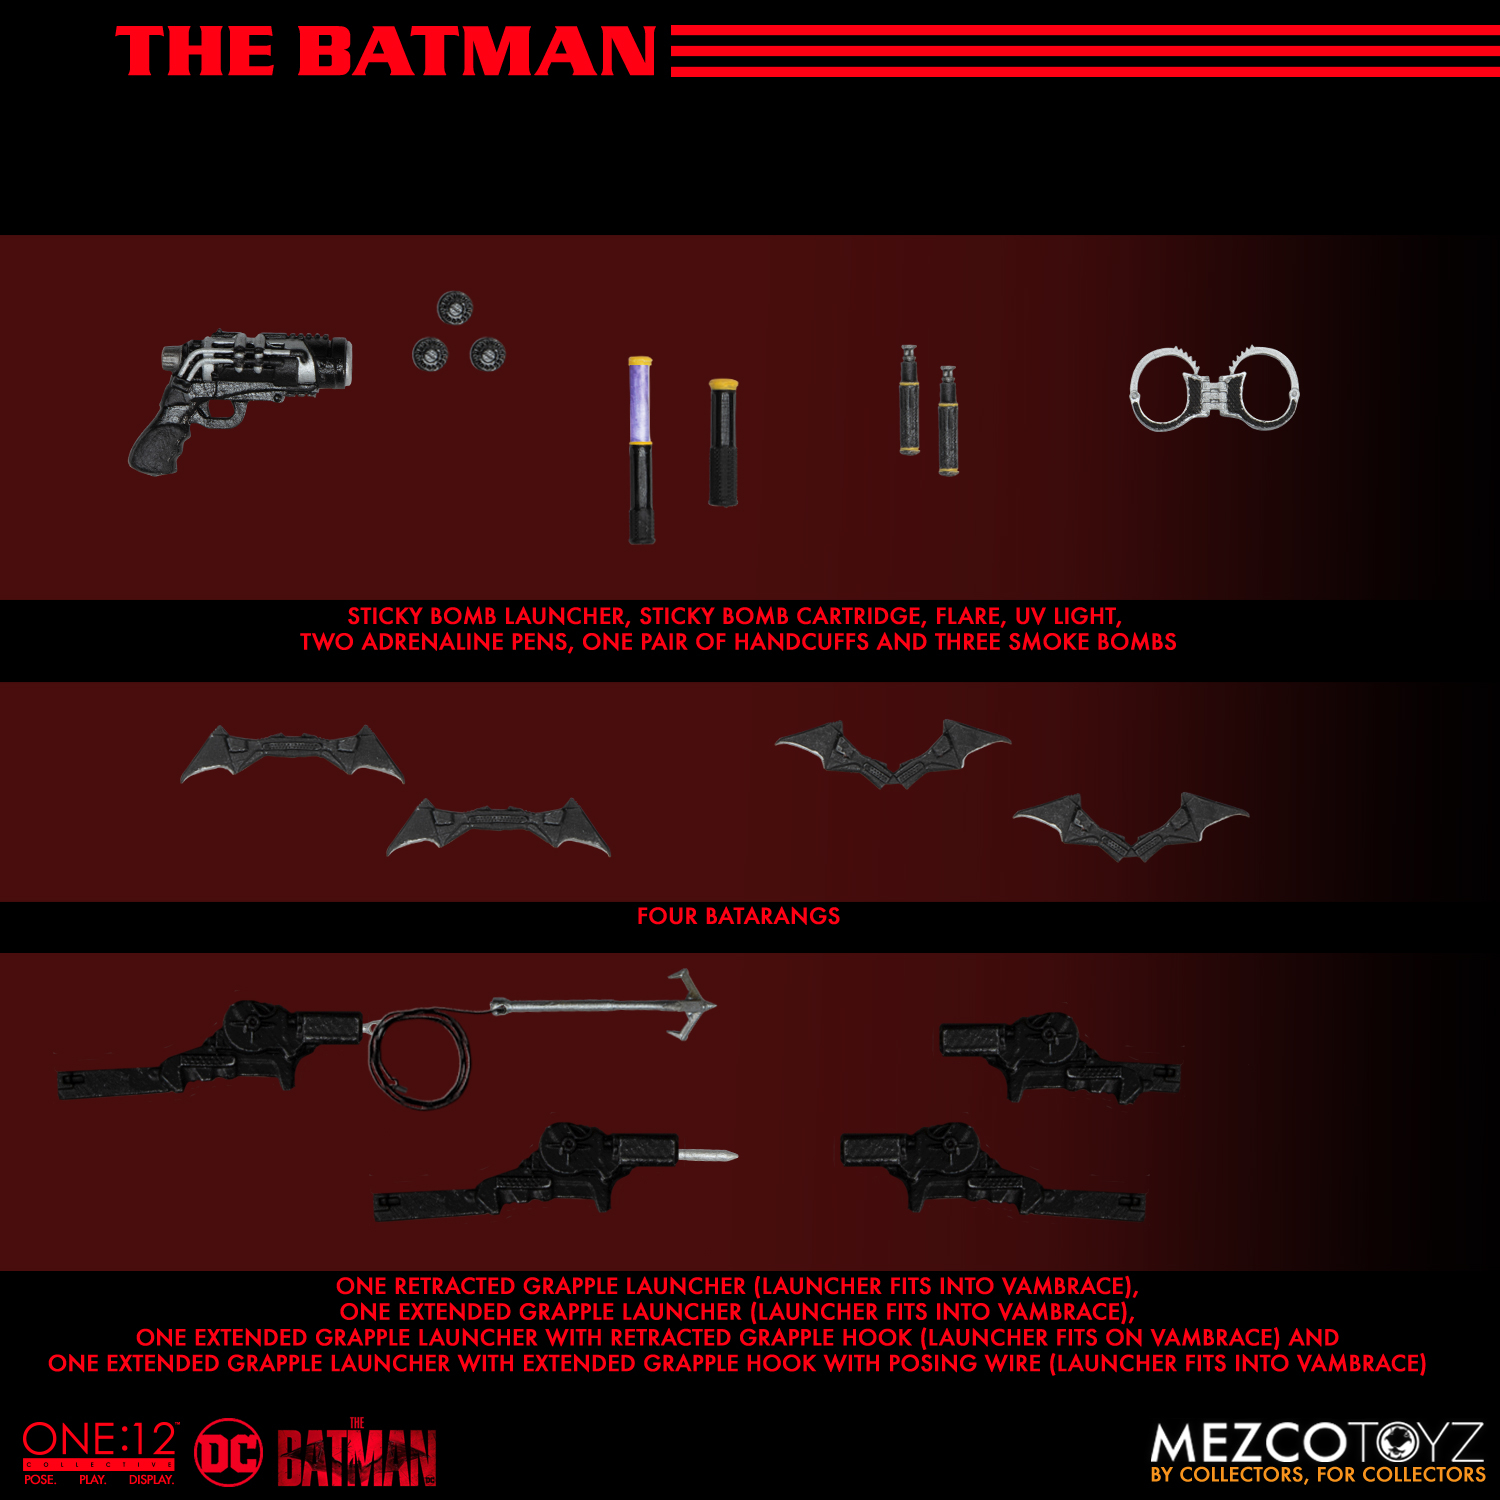 Mezco - One:12 The Batman Action Figure